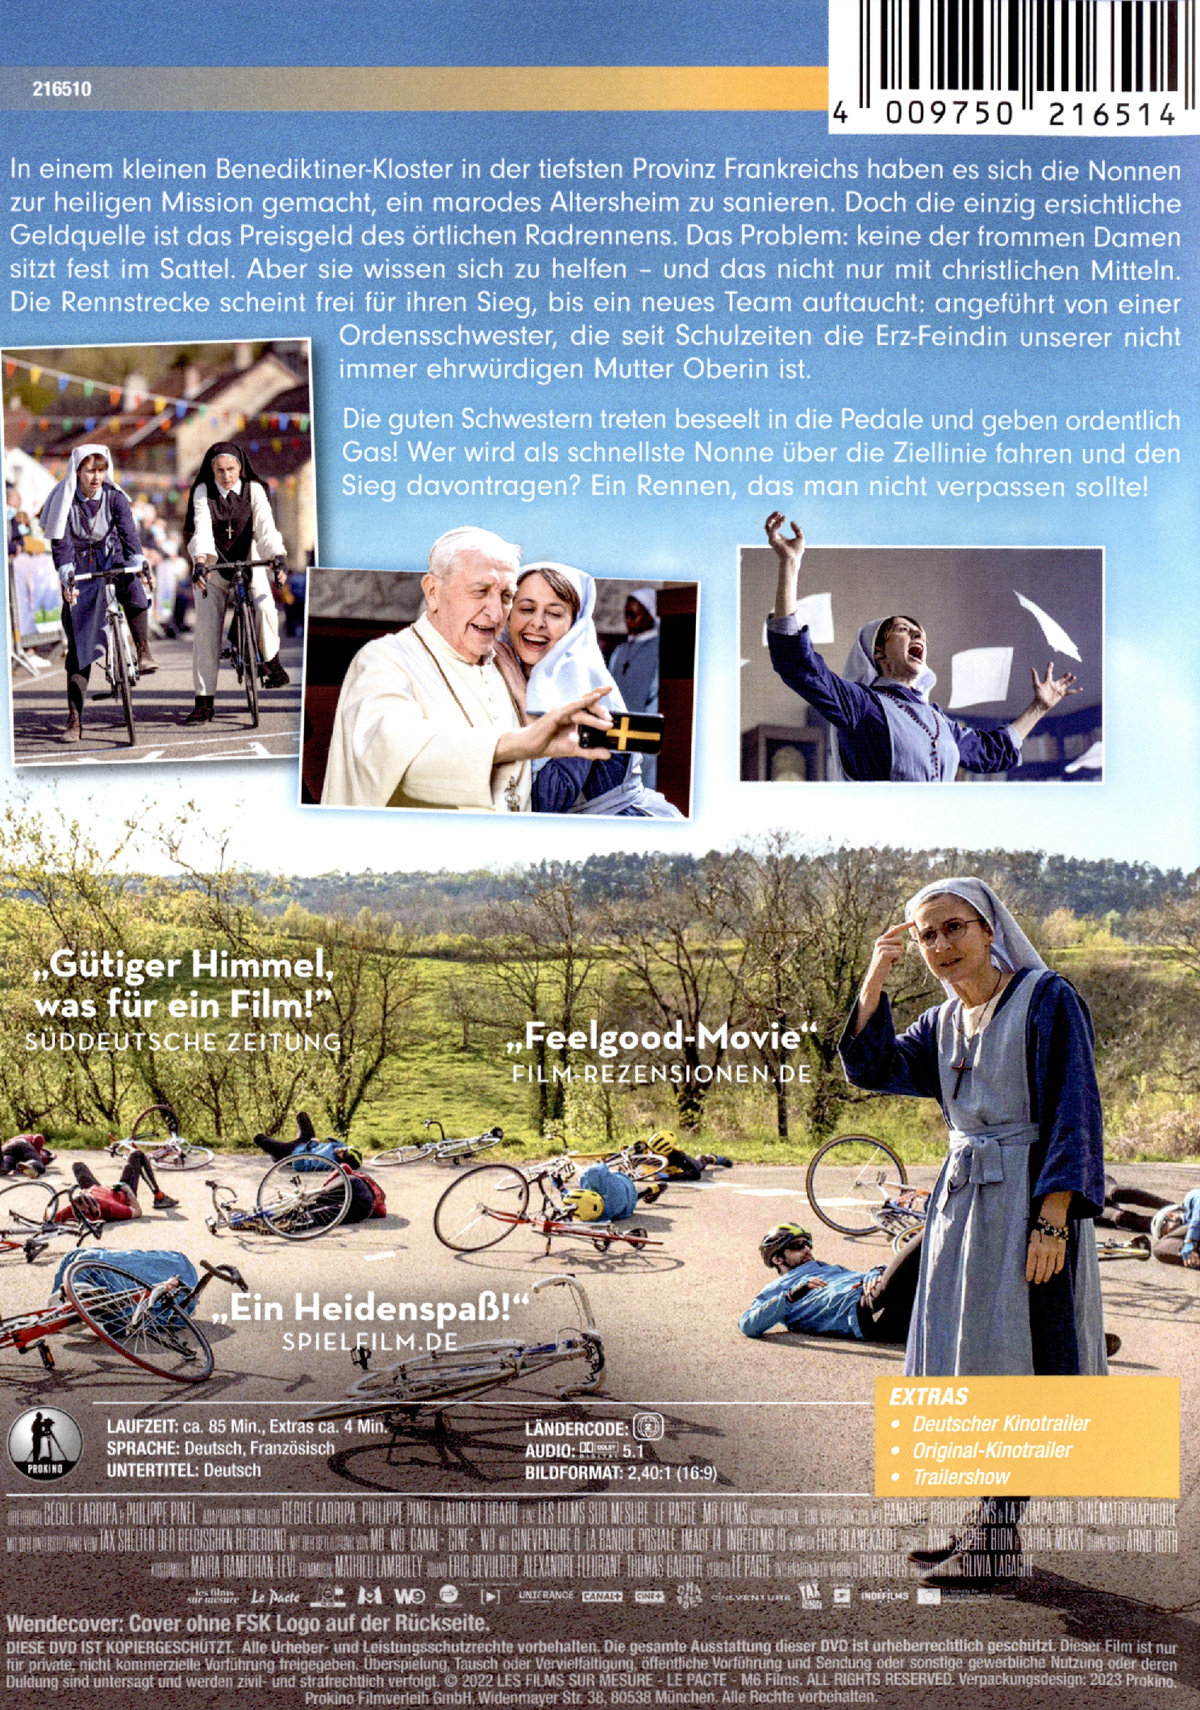 Das Nonnenrennen  (DVD)